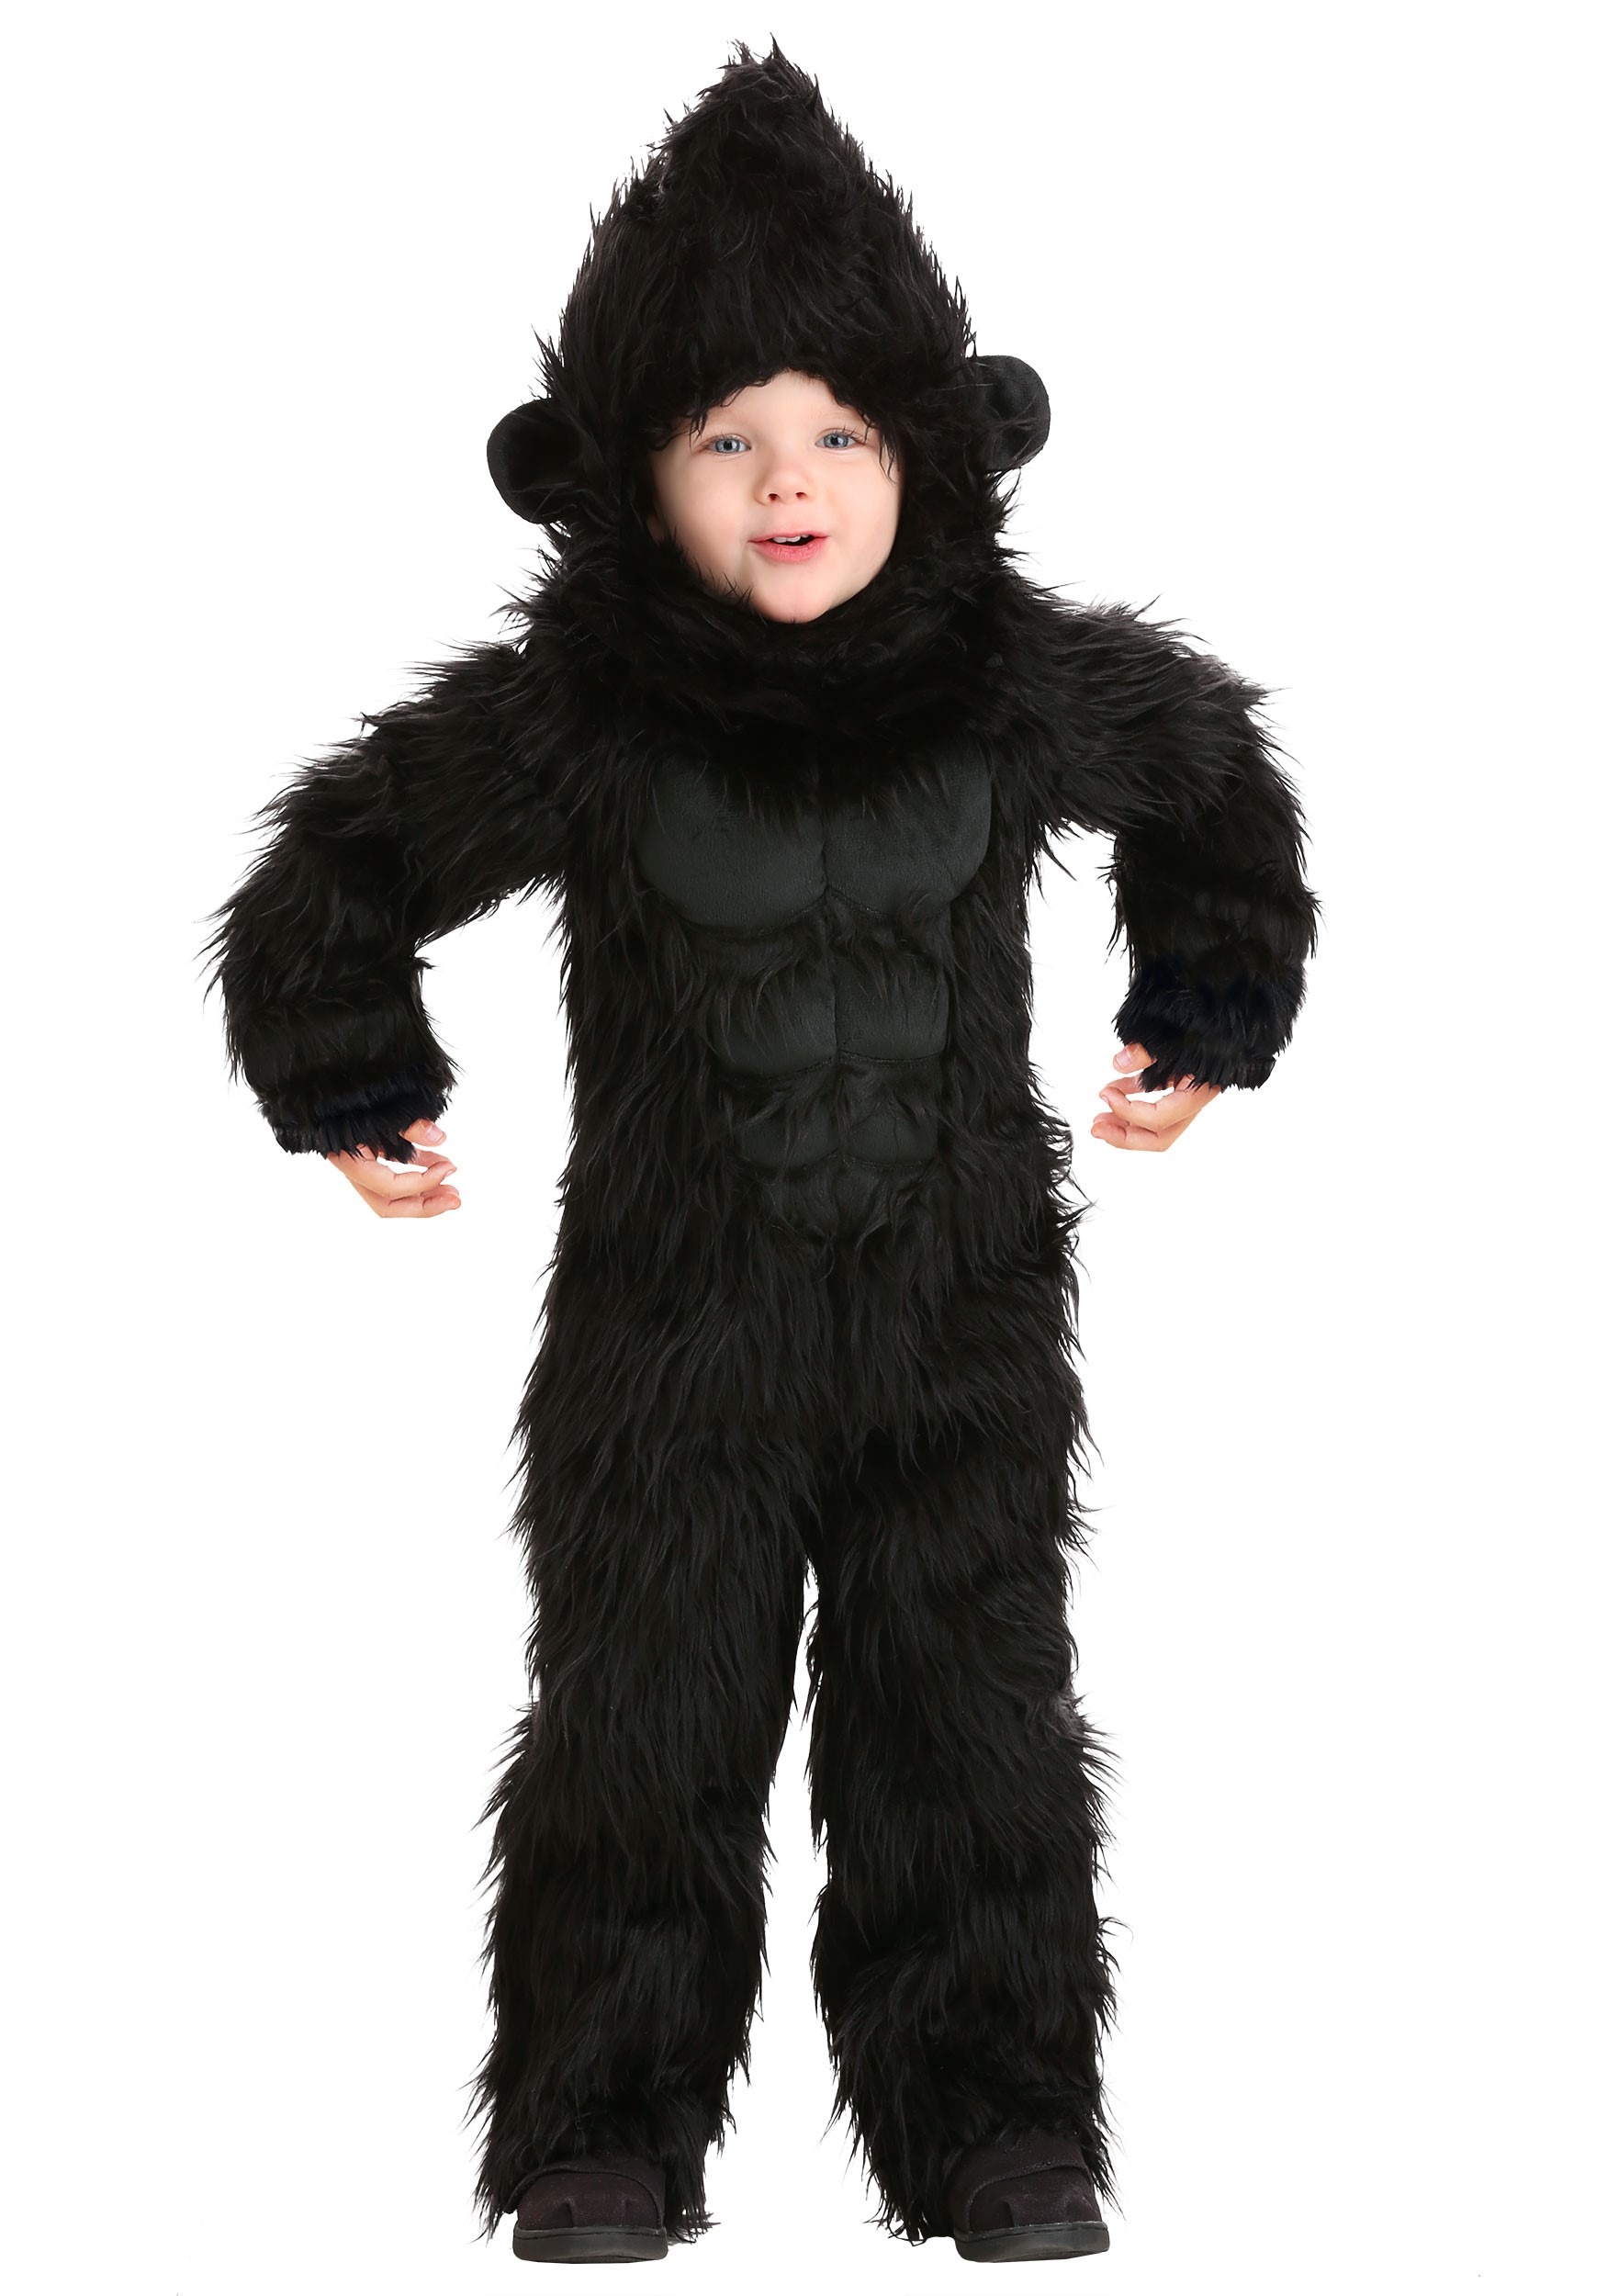 Gorilla Toddler Costume